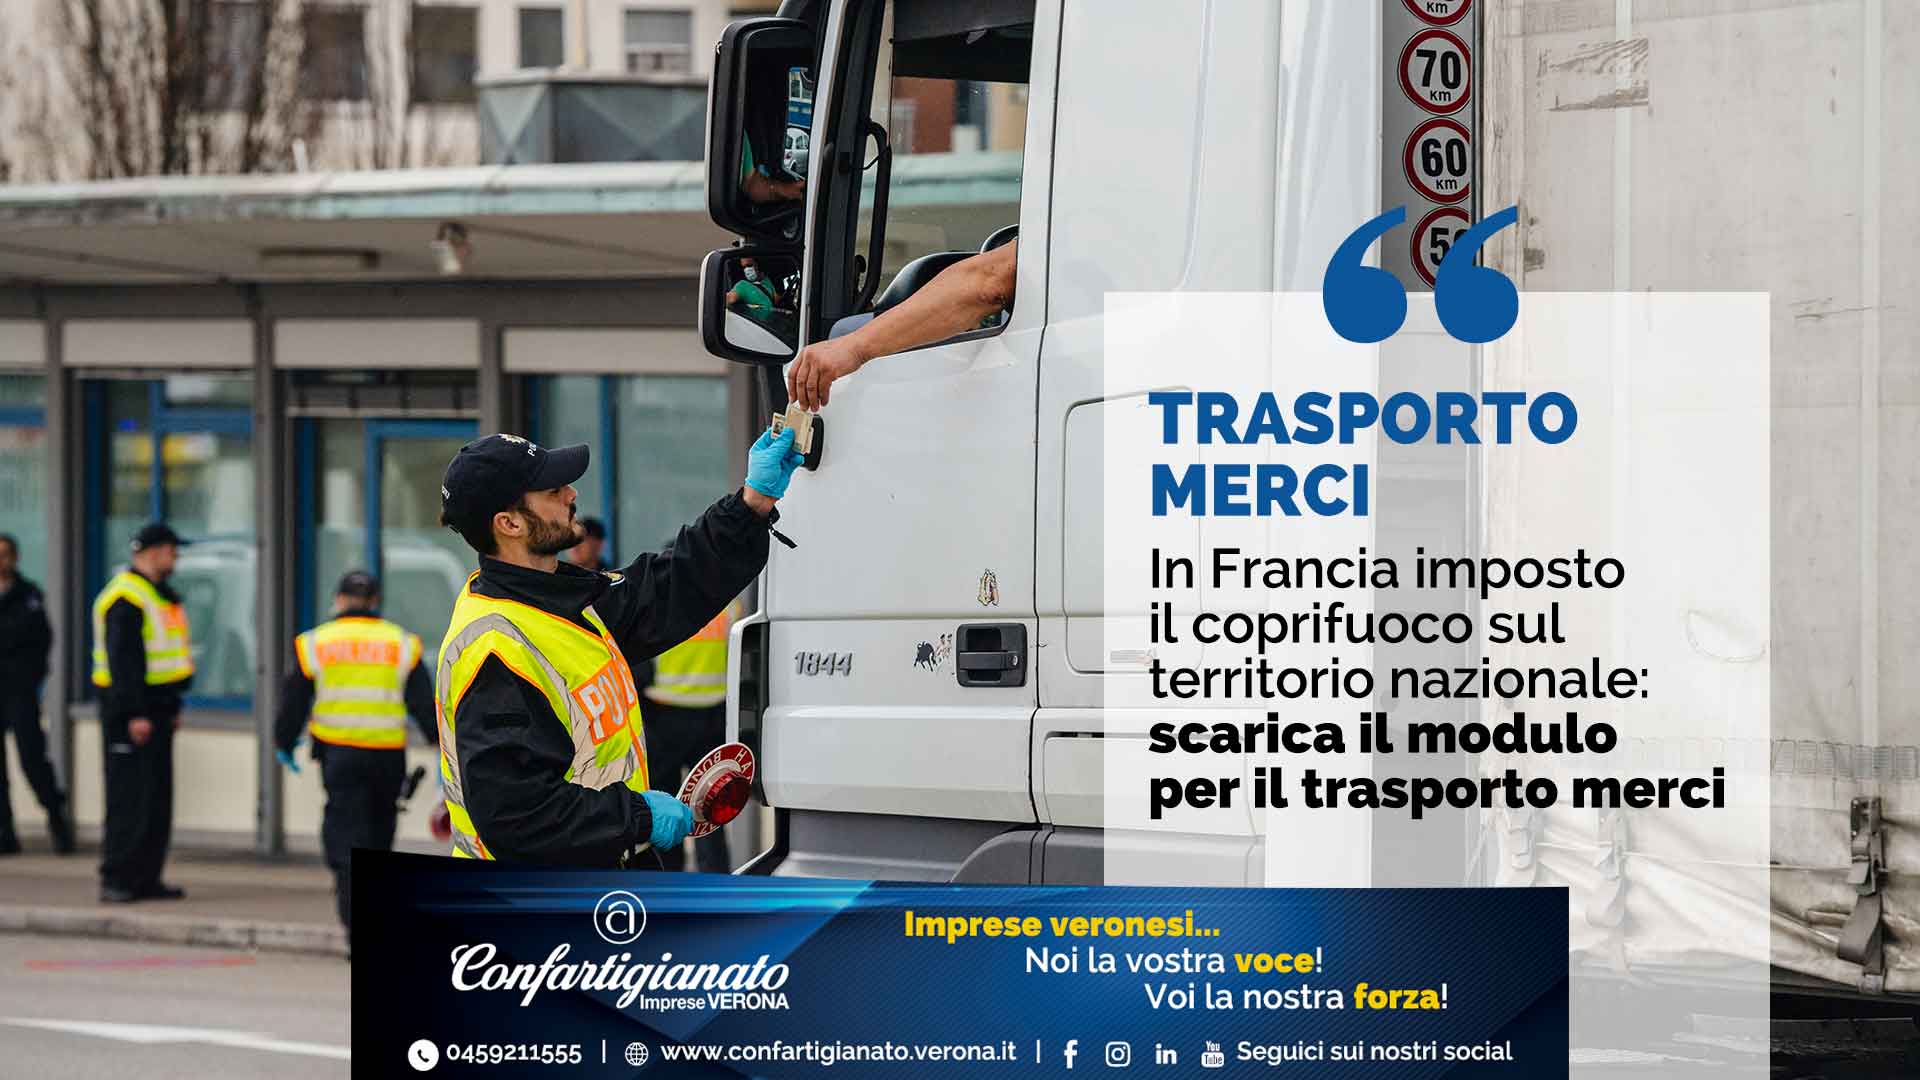 AUTOTRASPORTO – In Francia imposto il coprifuoco sul territorio nazionale: scarica il modulo per il trasporto merci